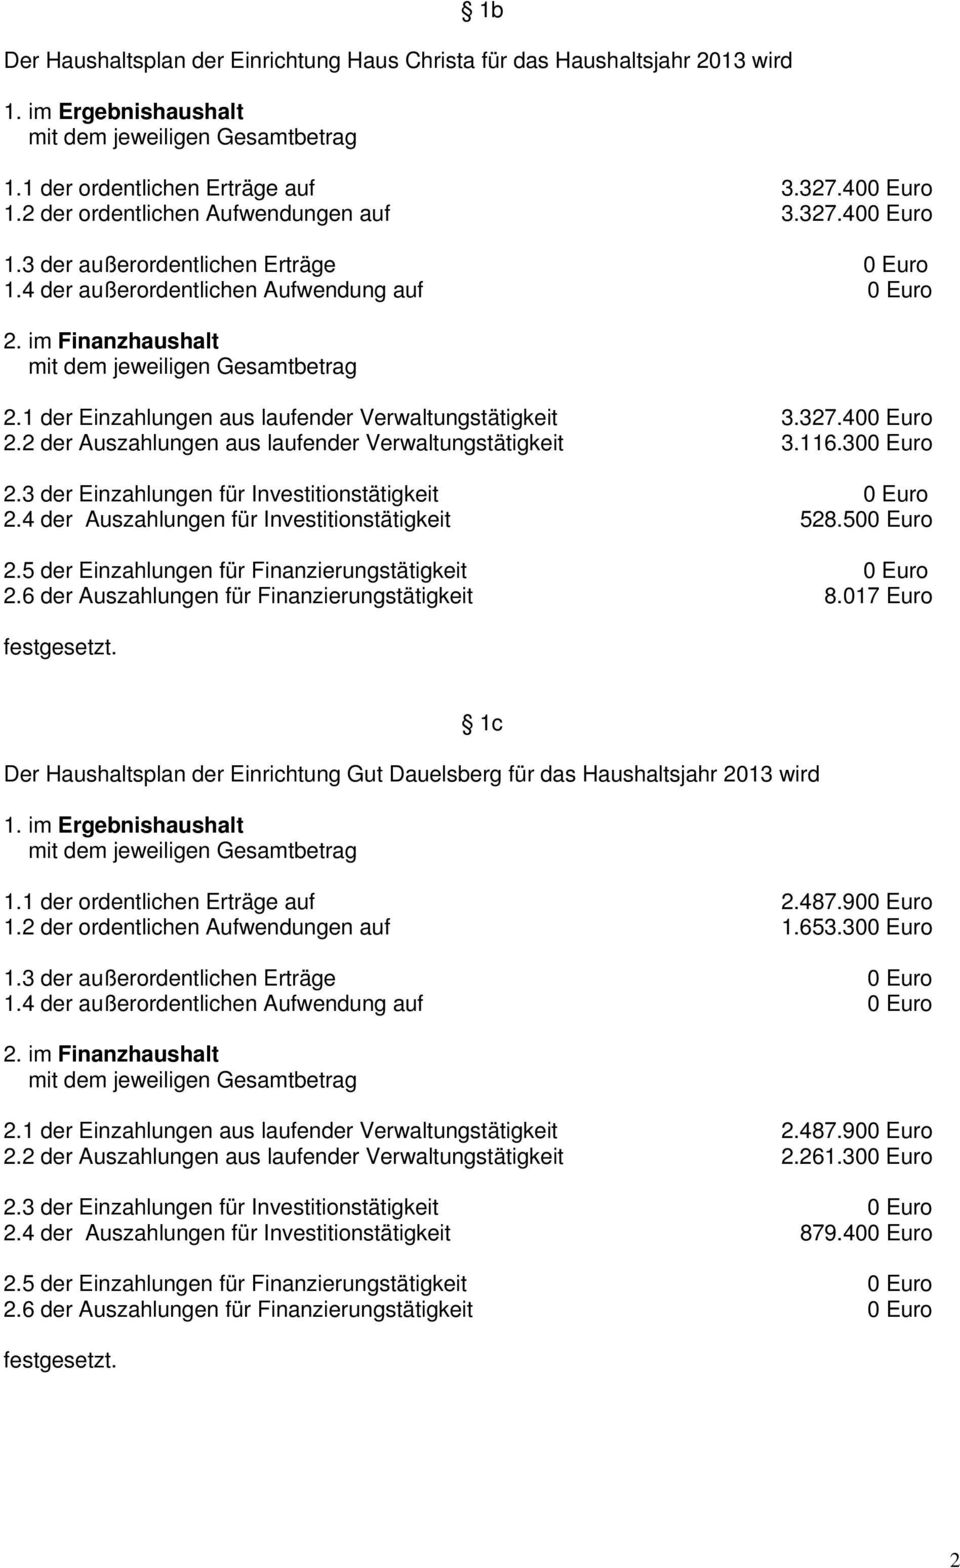 500 Euro 2.6 der Auszahlungen für Finanzierungstätigkeit 8.017 Euro 1c Der Haushaltsplan der Einrichtung Gut Dauelsberg für das Haushaltsjahr 2013 wird 1.1 der ordentlichen Erträge auf 2.487.